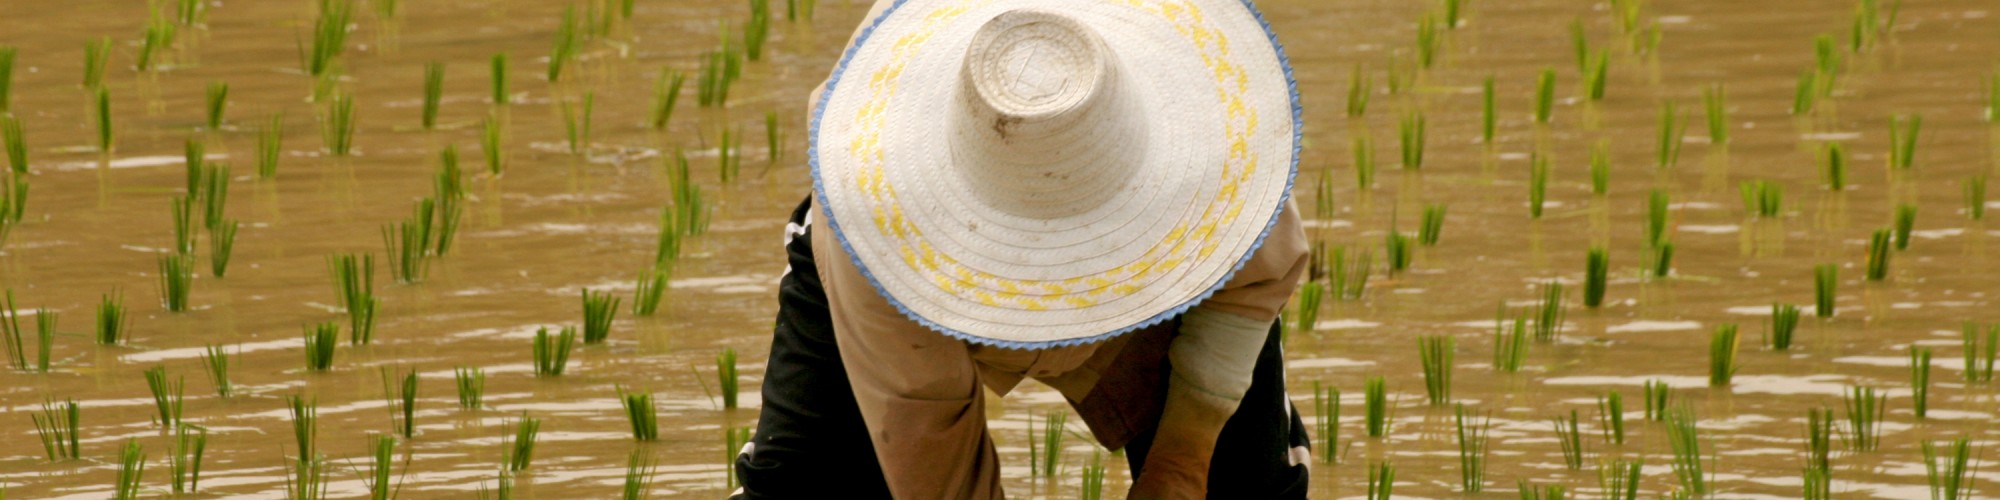 thai_rice_farmer[1]